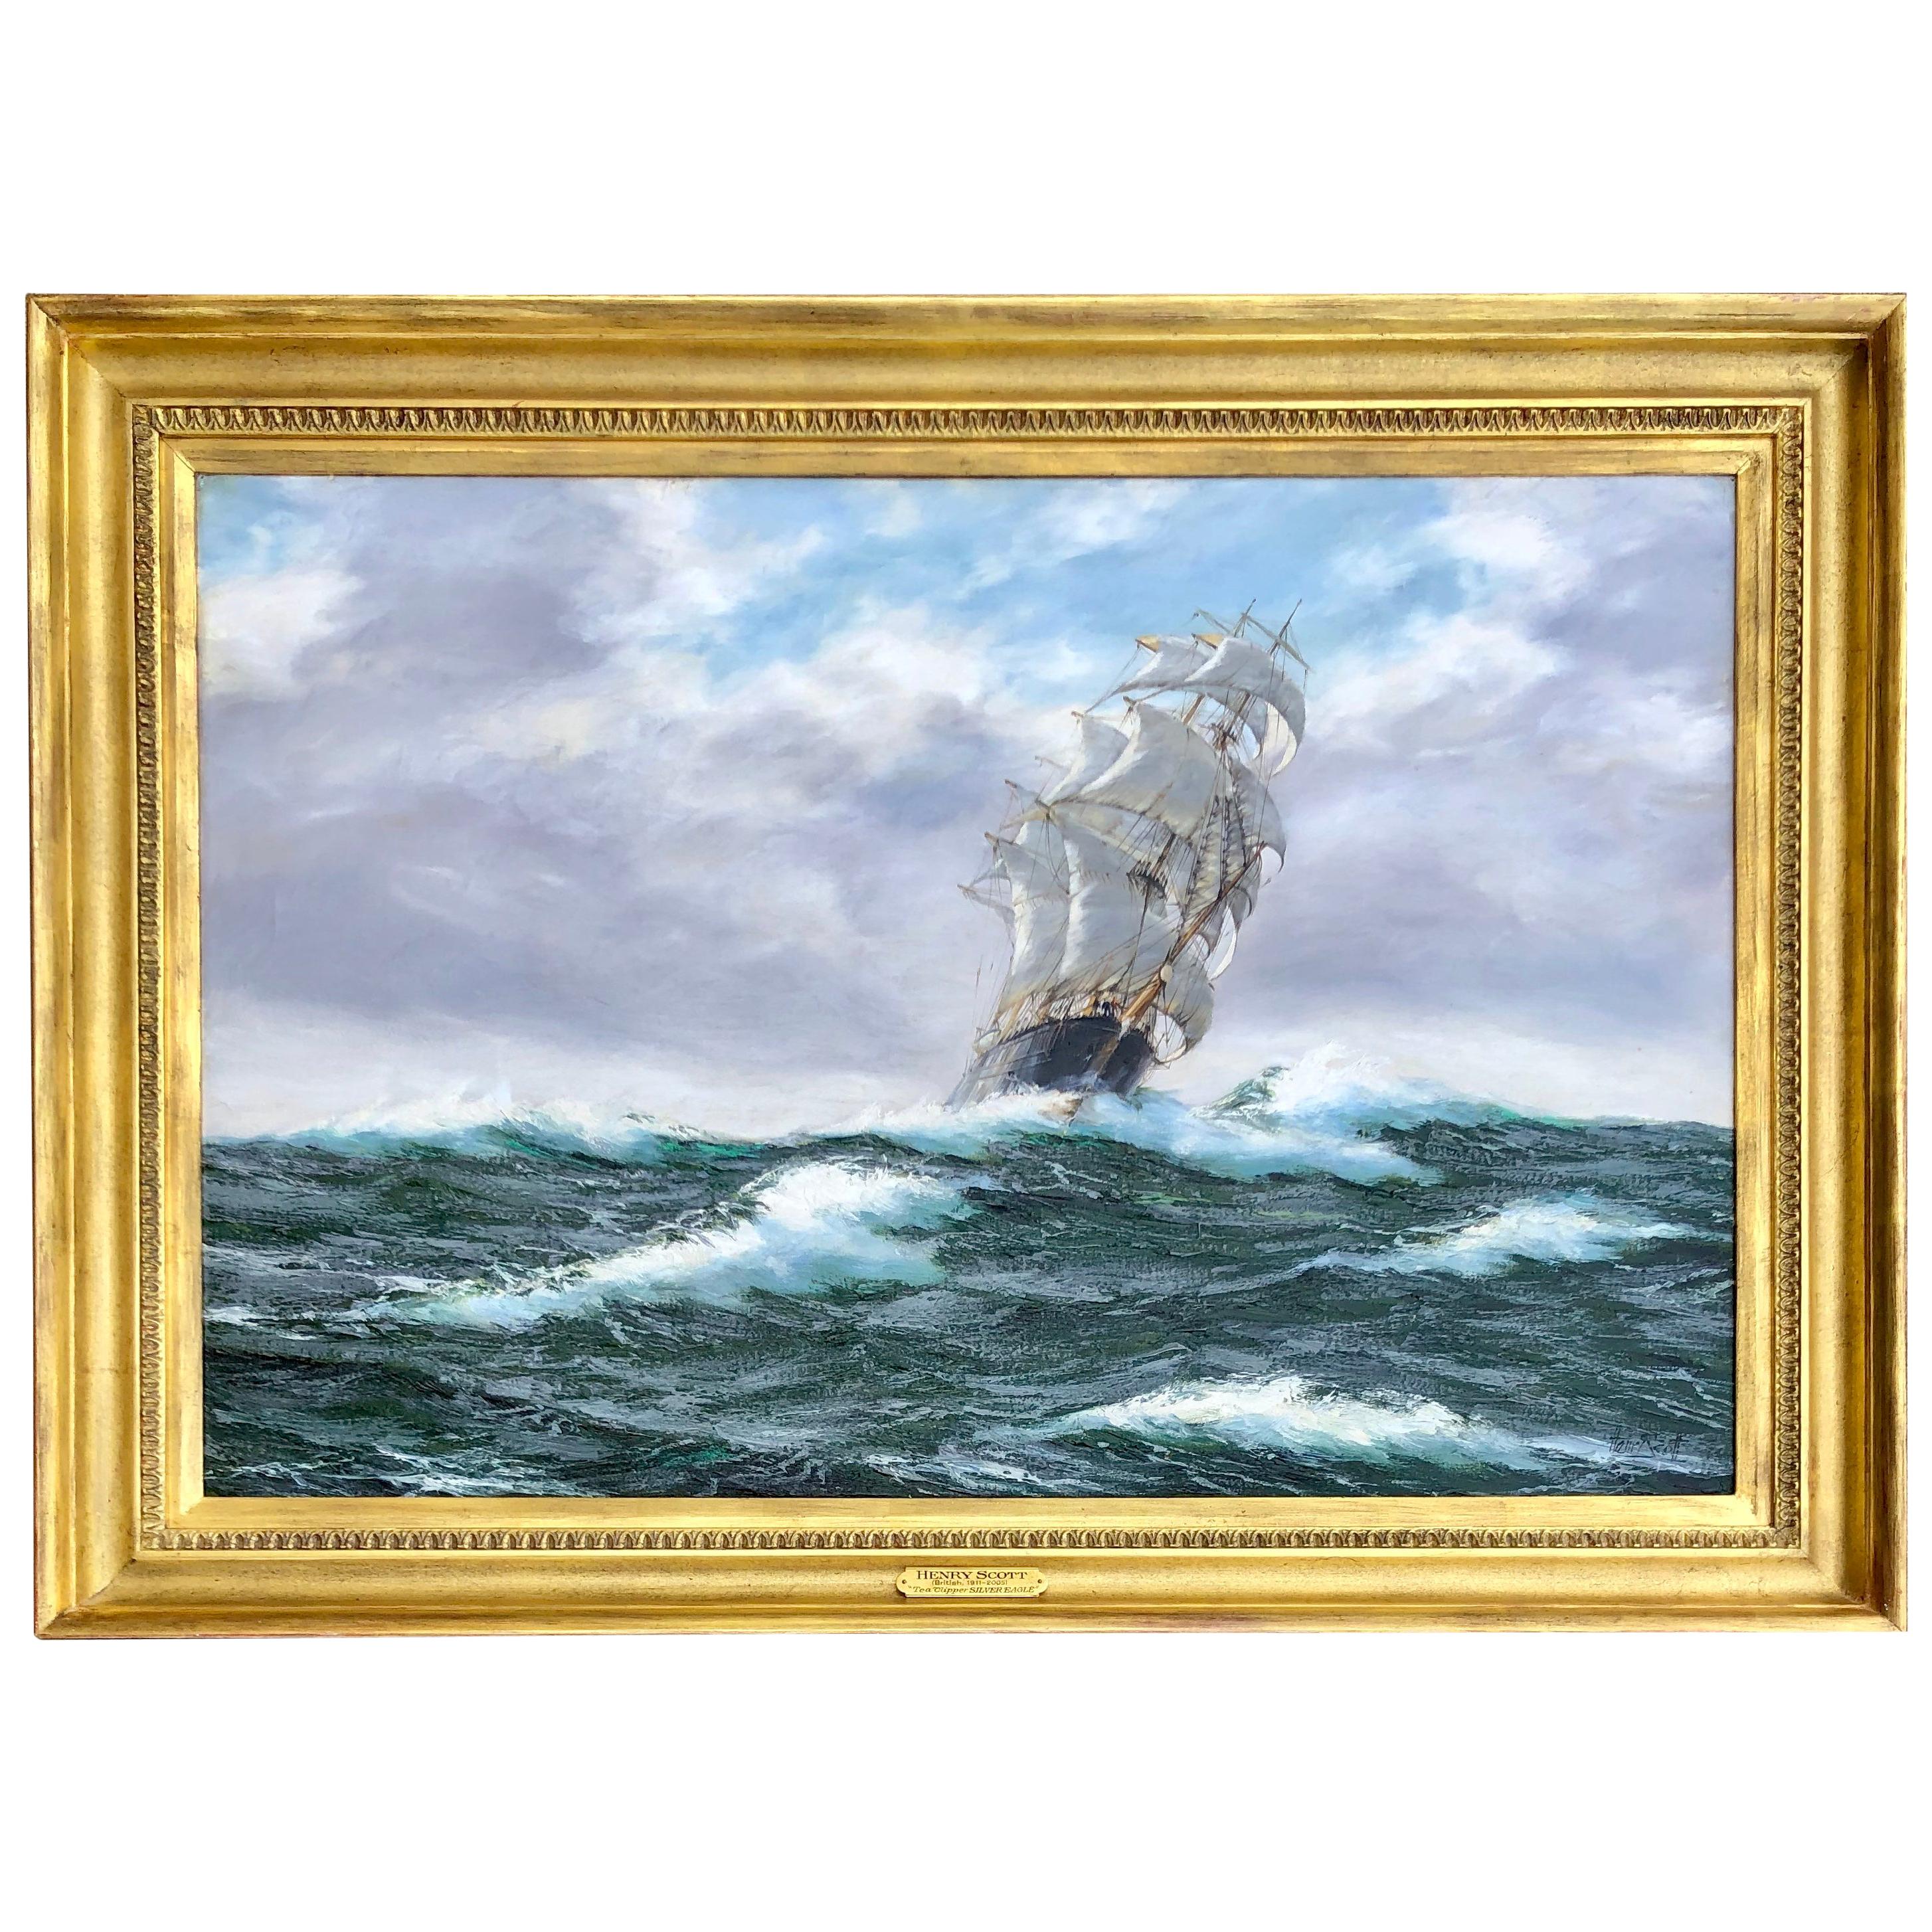 "Tea Clipper In High Seas" by Henry Scott